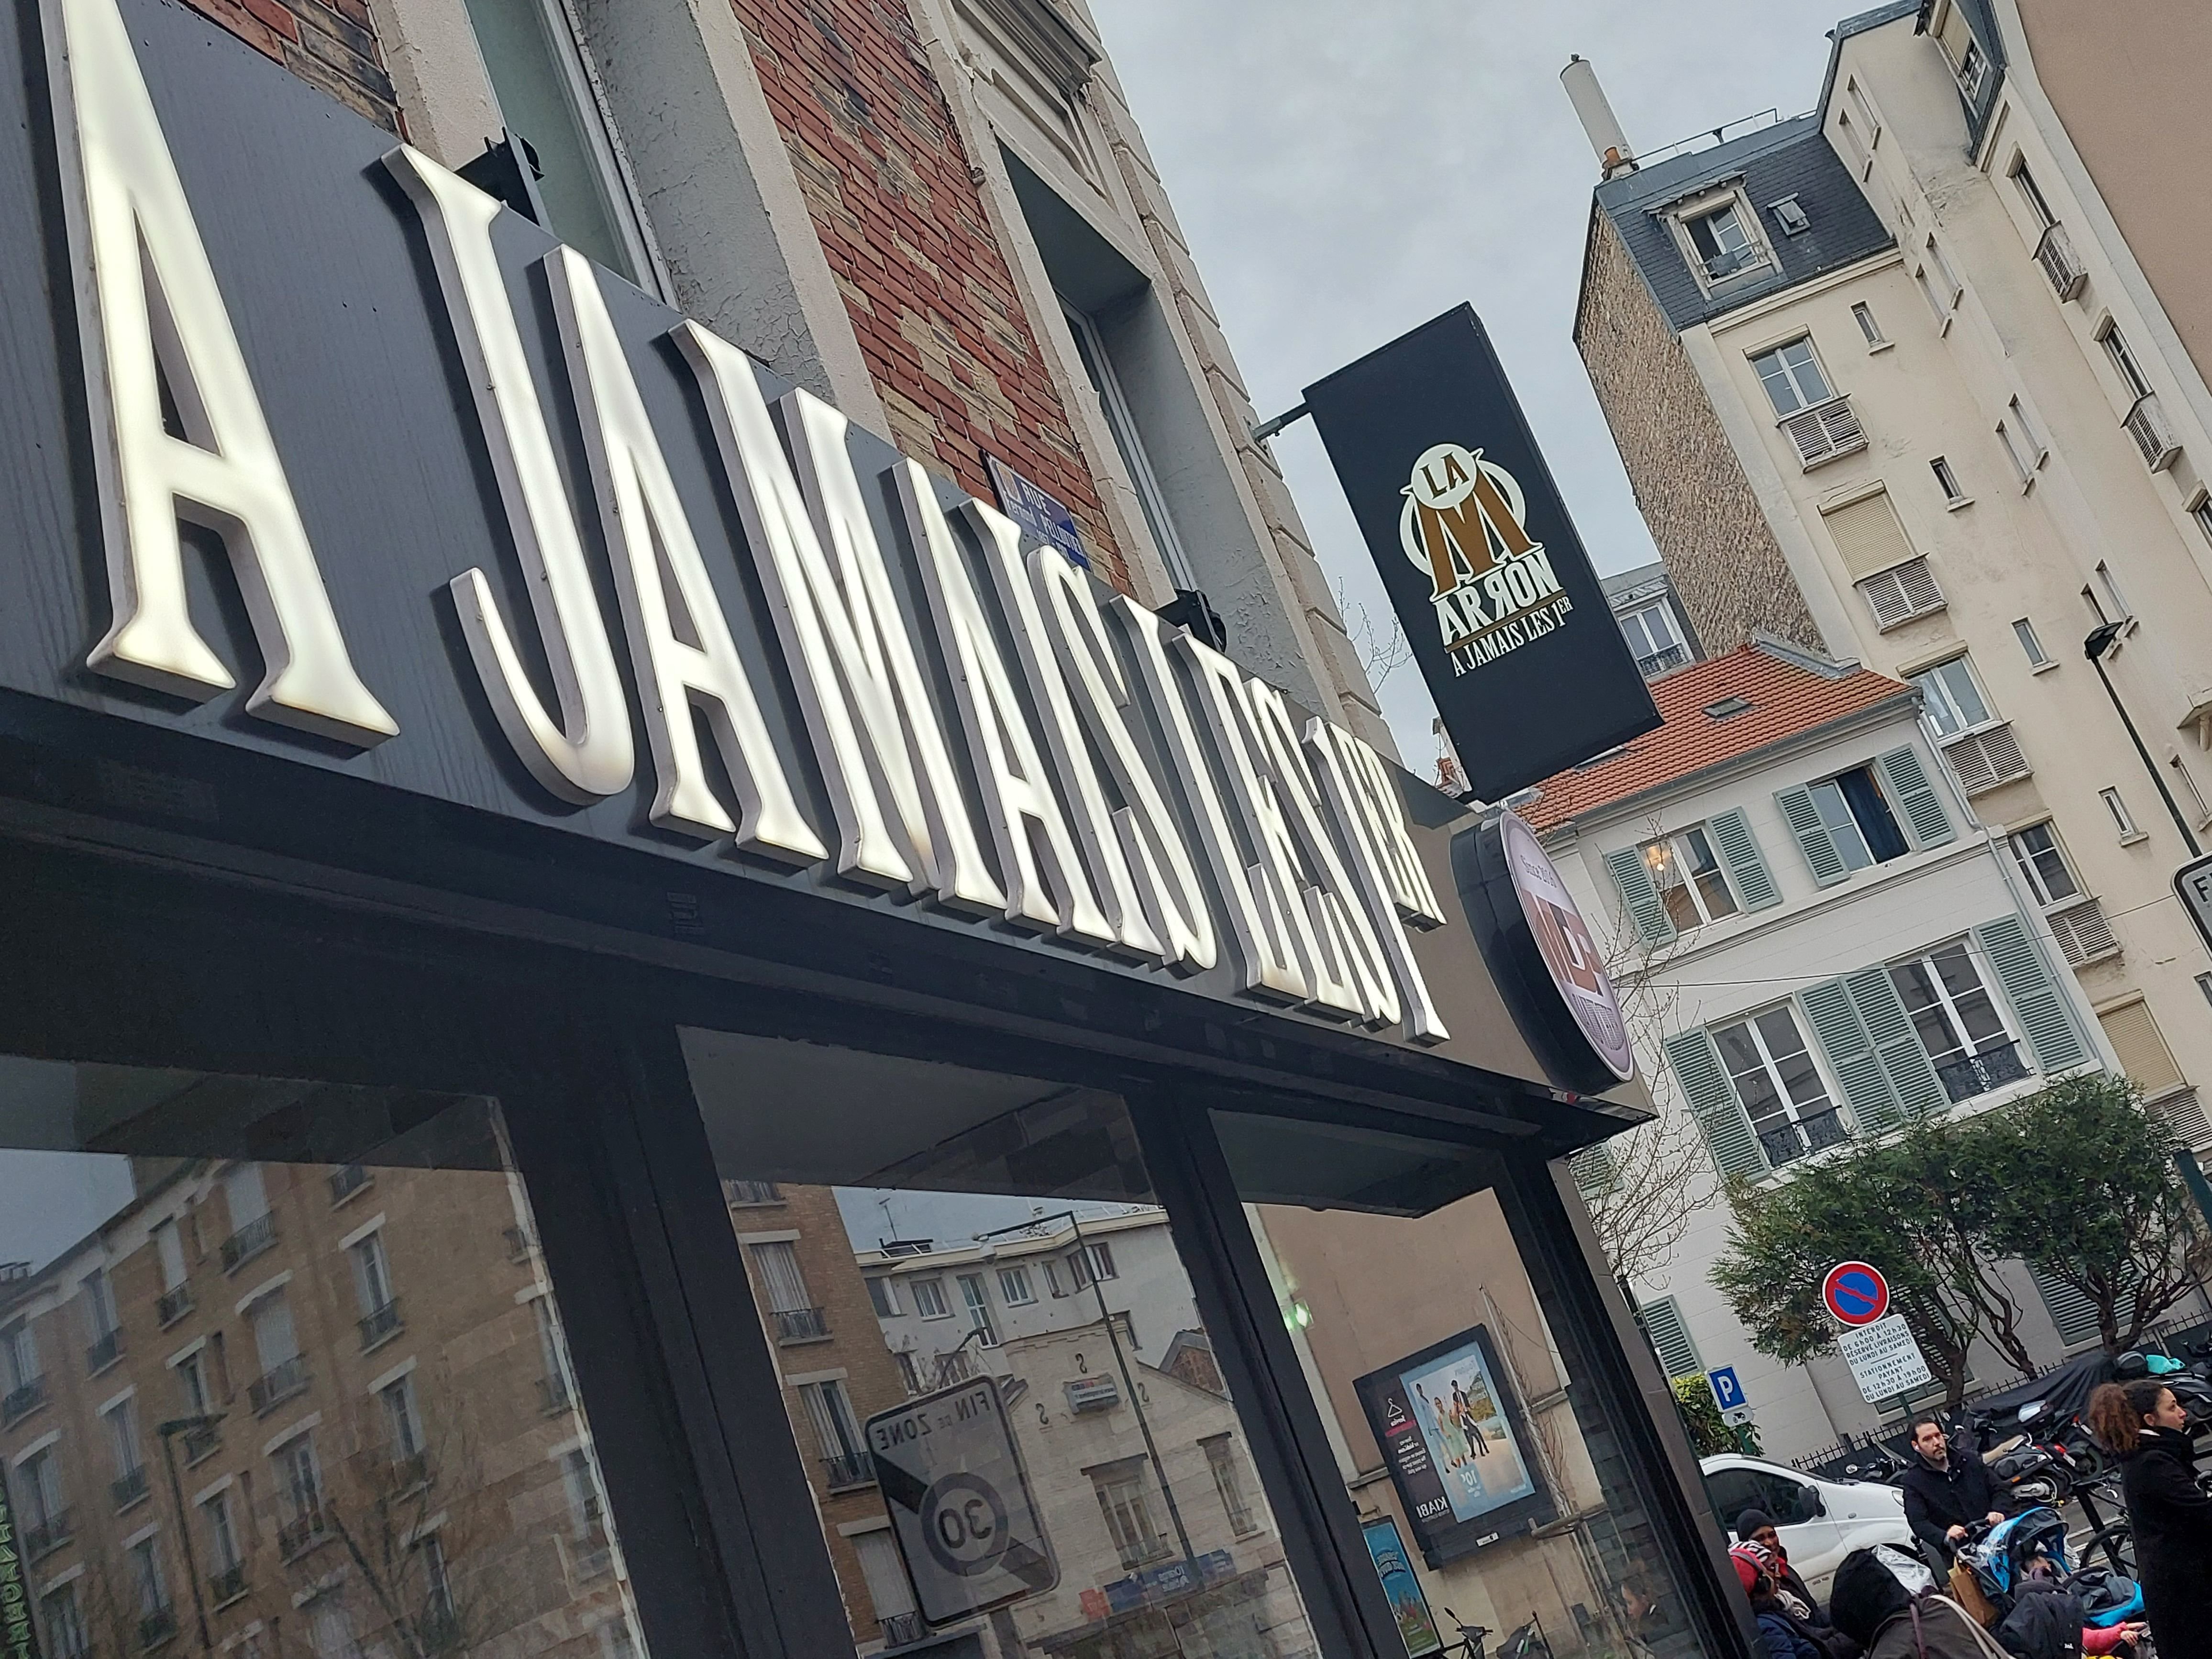 Clichy (Hauts-de-Seine), ce vendredi 29 mars. L'enseigne du restaurant « À jamais les 1er » s'étale en grand à l'angle de la rue de Neuilly et de la rue Fernand Pelloutier. LP/D.L.